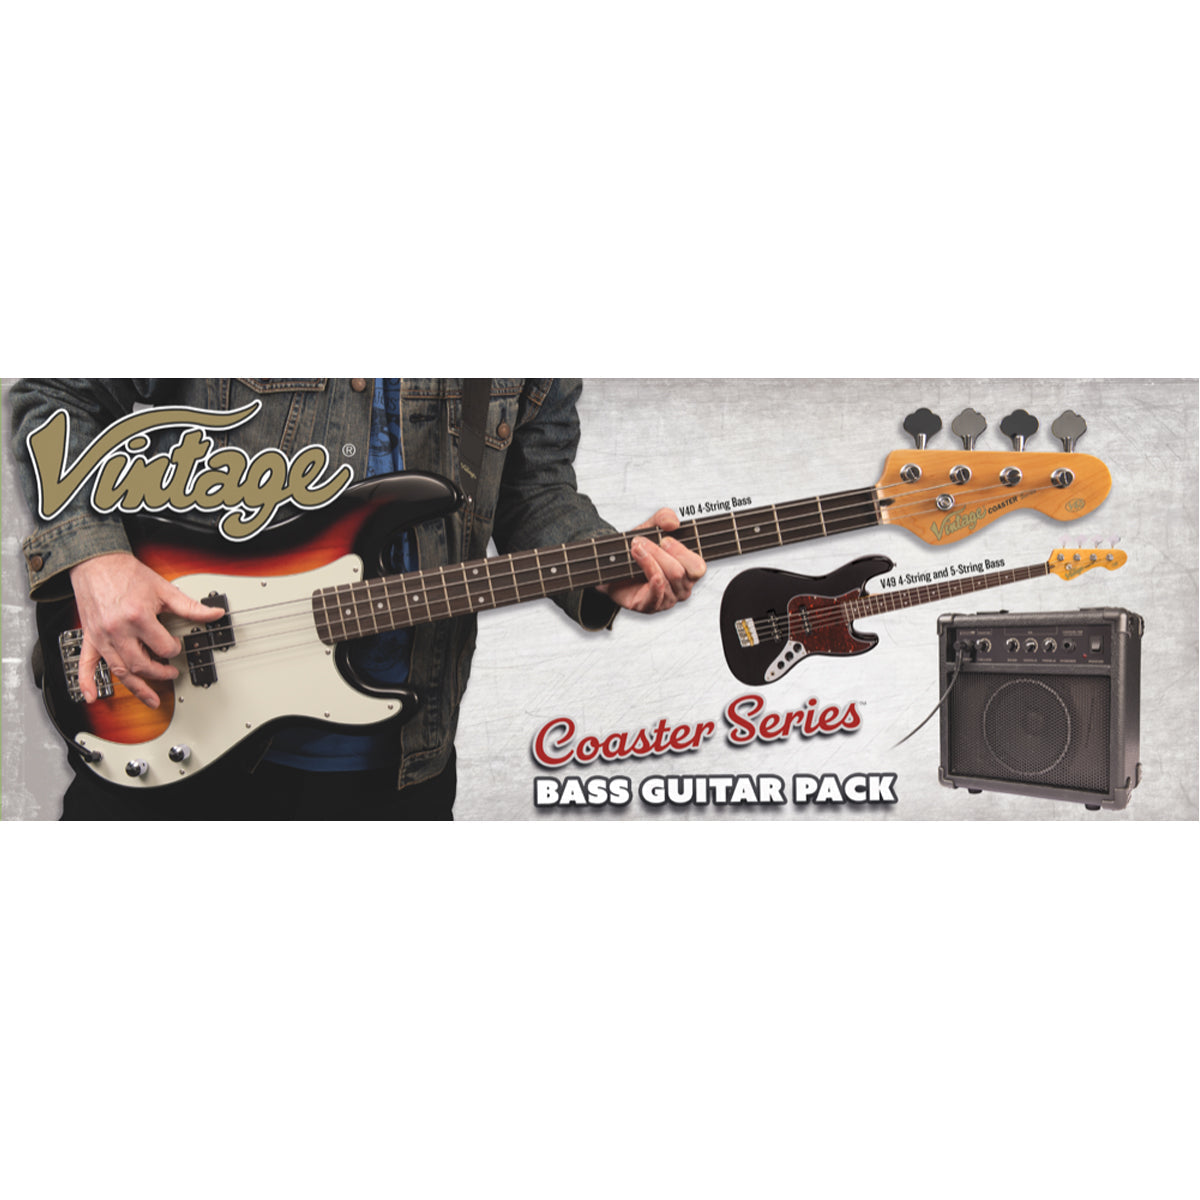 Vintage V40 Coaster Series Bass Guitar Pack ~ Vintage White, Bass Guitar Packs for sale at Richards Guitars.